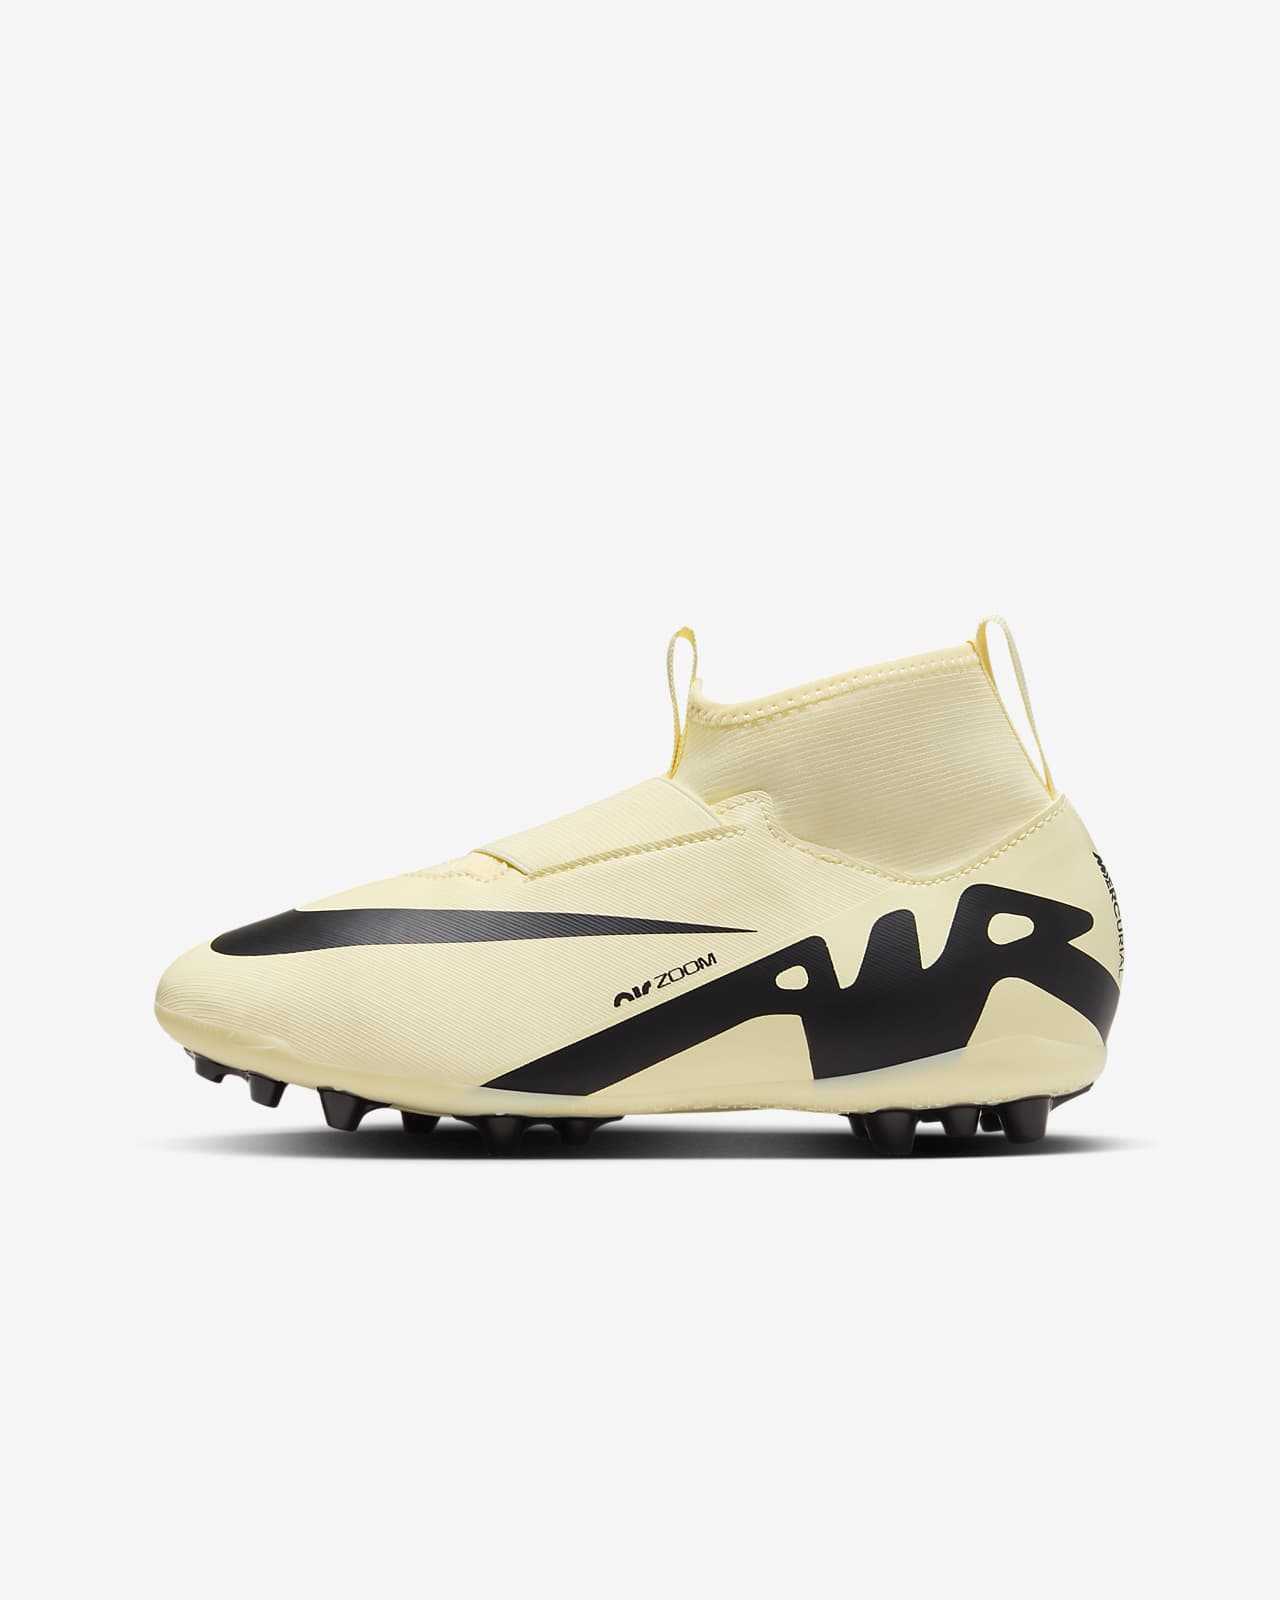 Men's Football Boots & Shoes. Nike ZA